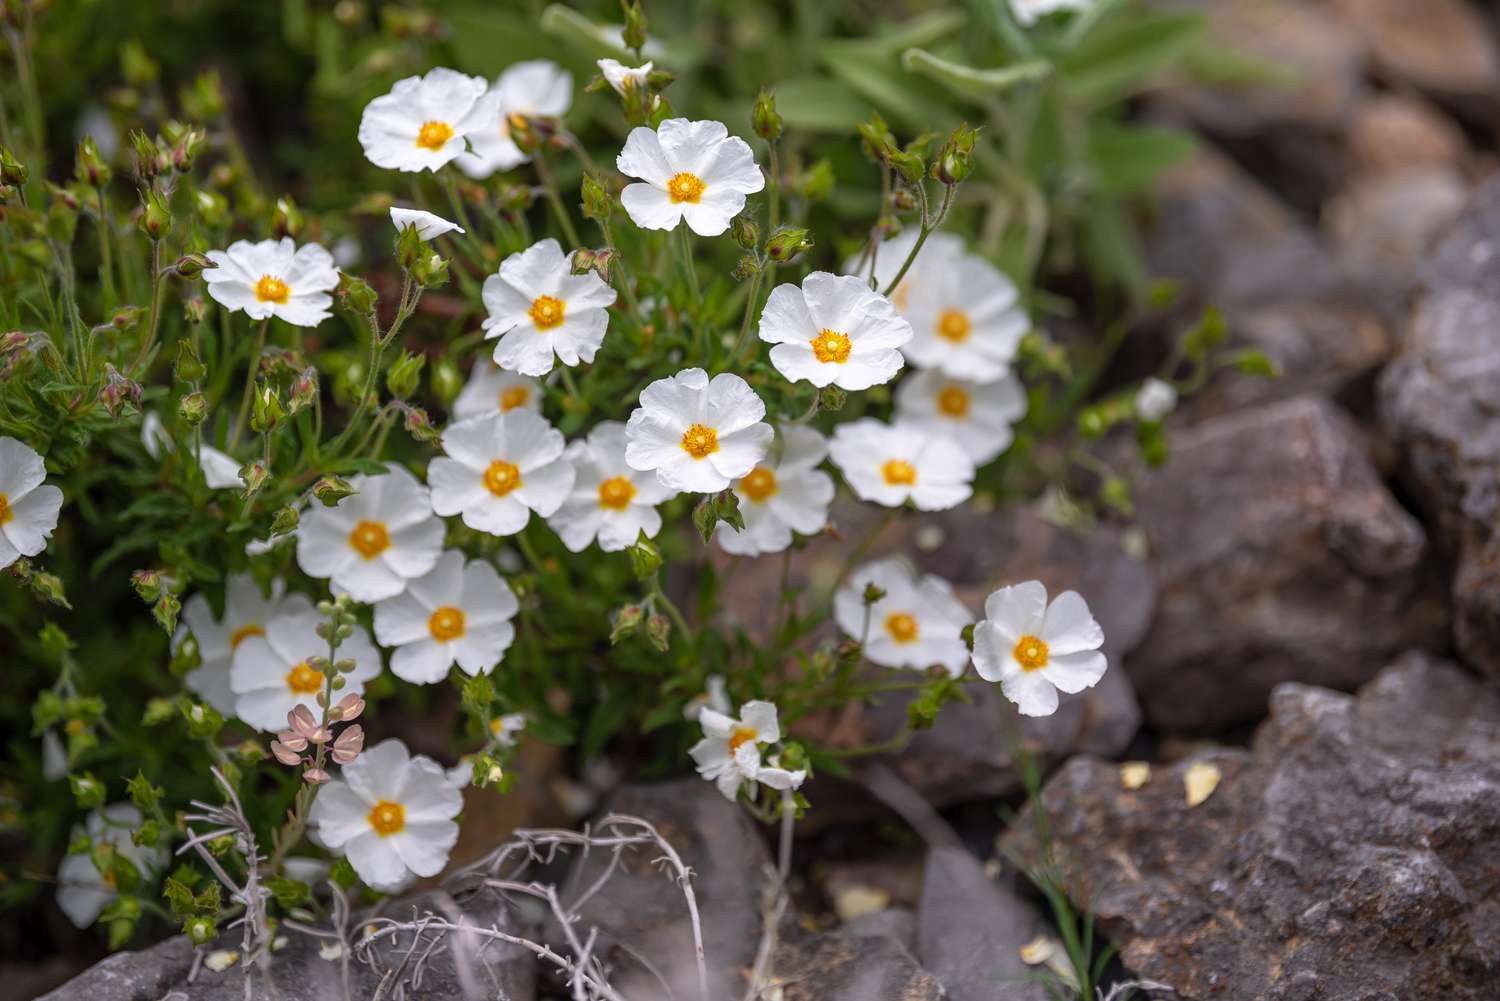 Arbusto de jara cubierto de pequeñas flores blancas con centros amarillos cerca de pequeñas rocas